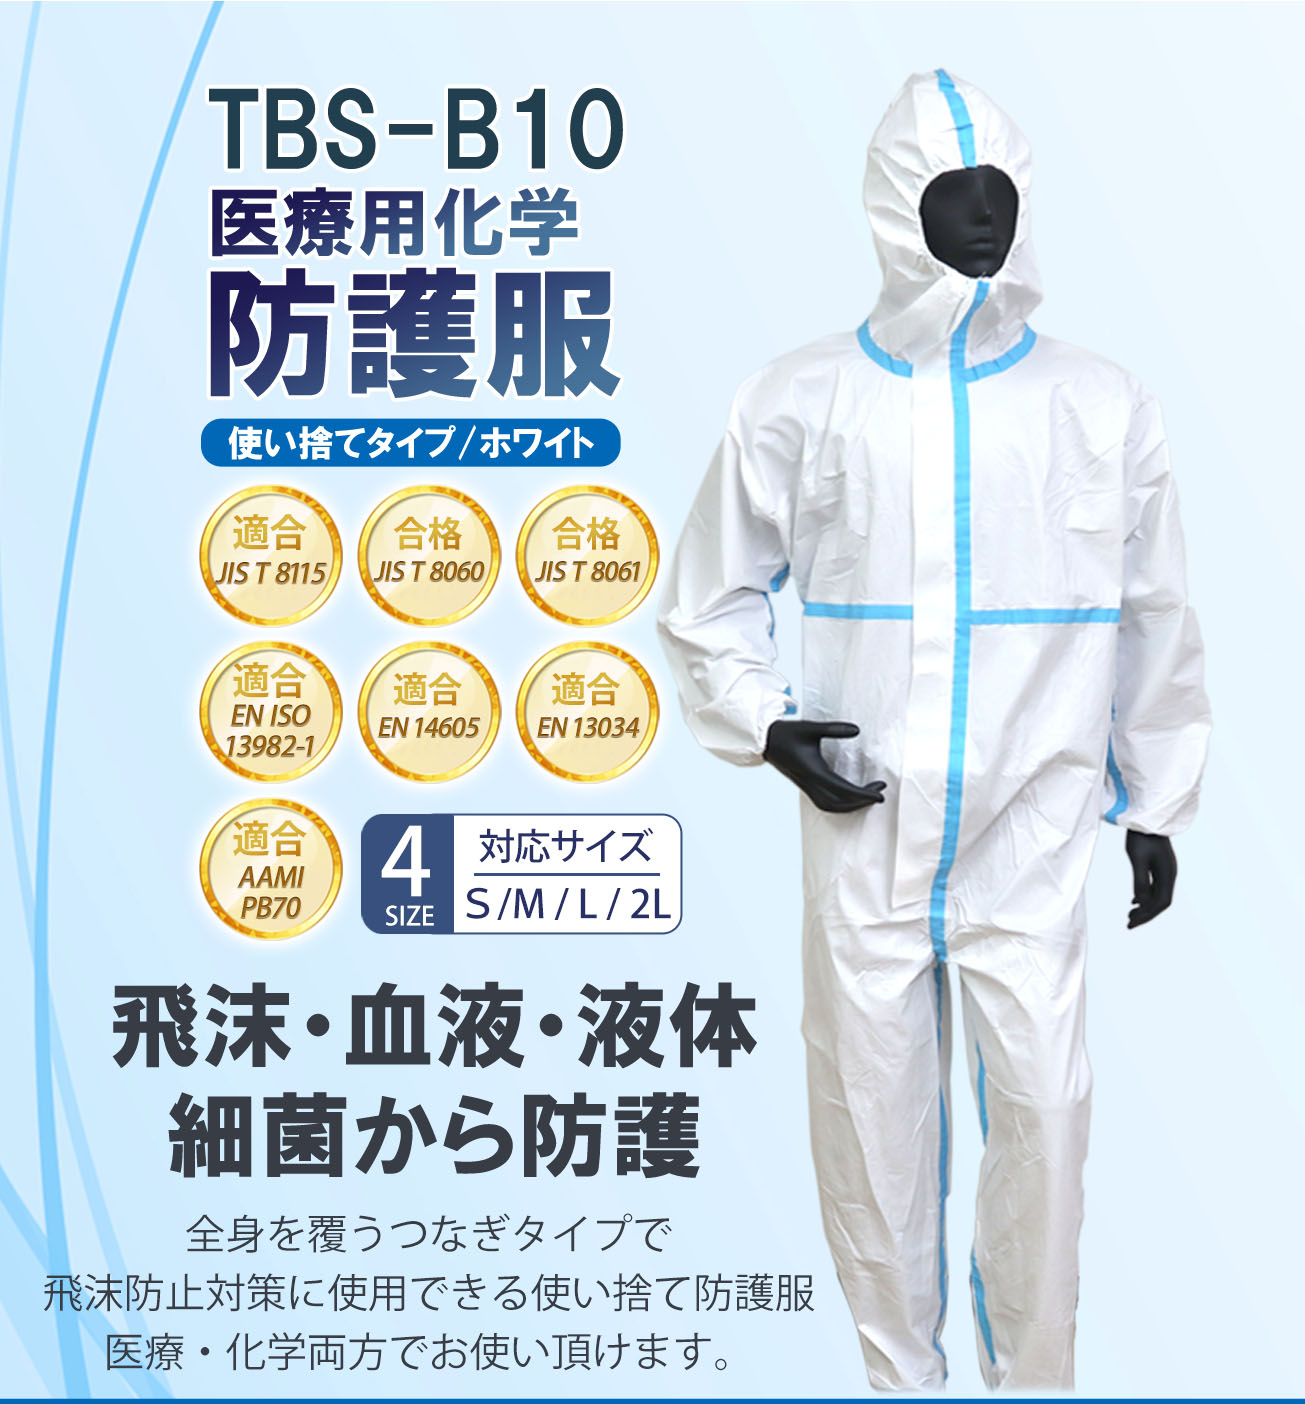 【つばさ】TBS-B10 医療用化学 防護服 Sサイズ 医療用 不織布 ウイルス 滅菌 個包装 白 使い捨て 病院 Tsubasa